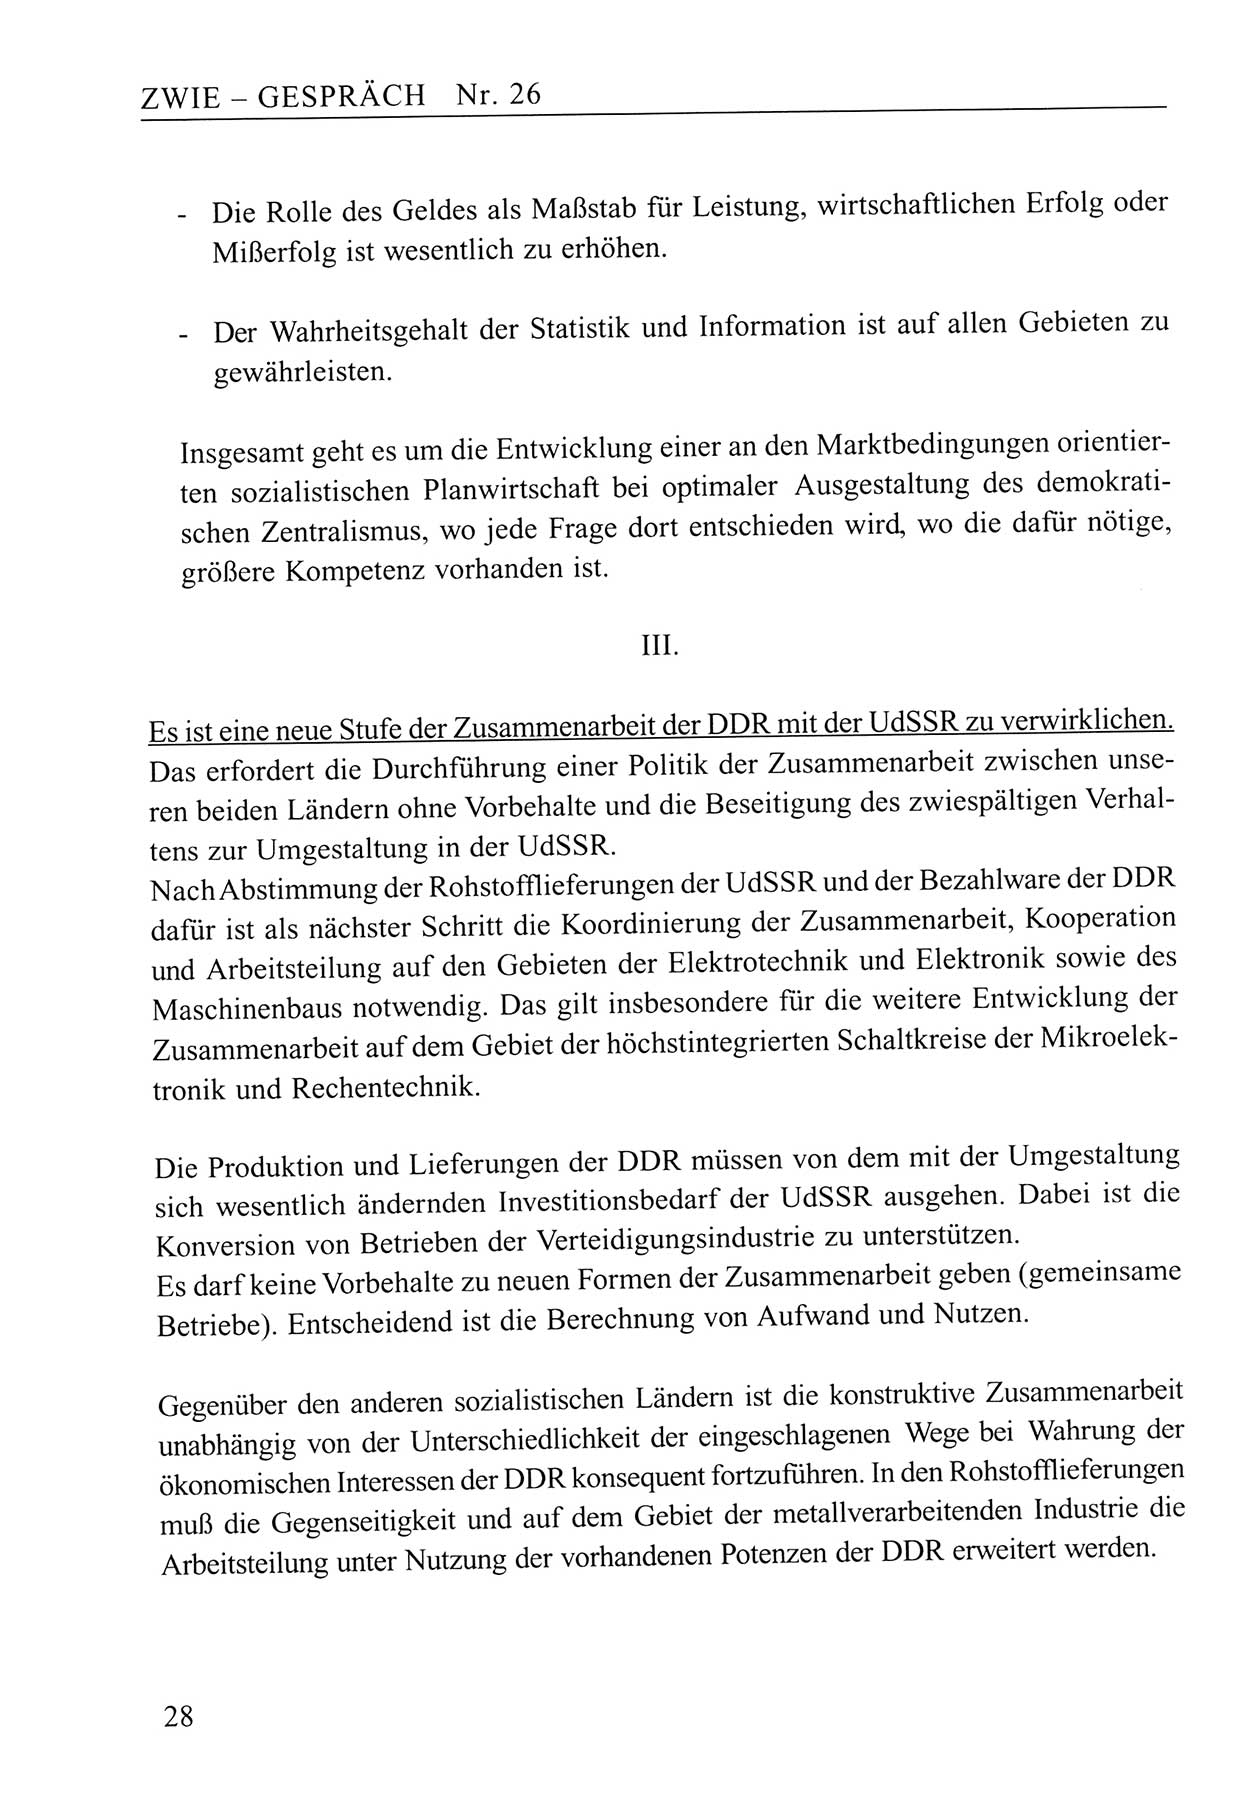 Zwie-Gespräch, Beiträge zum Umgang mit der Staatssicherheits-Vergangenheit [Deutsche Demokratische Republik (DDR)], Ausgabe Nr. 26, Berlin 1995, Seite 28 (Zwie-Gespr. Ausg. 26 1995, S. 28)